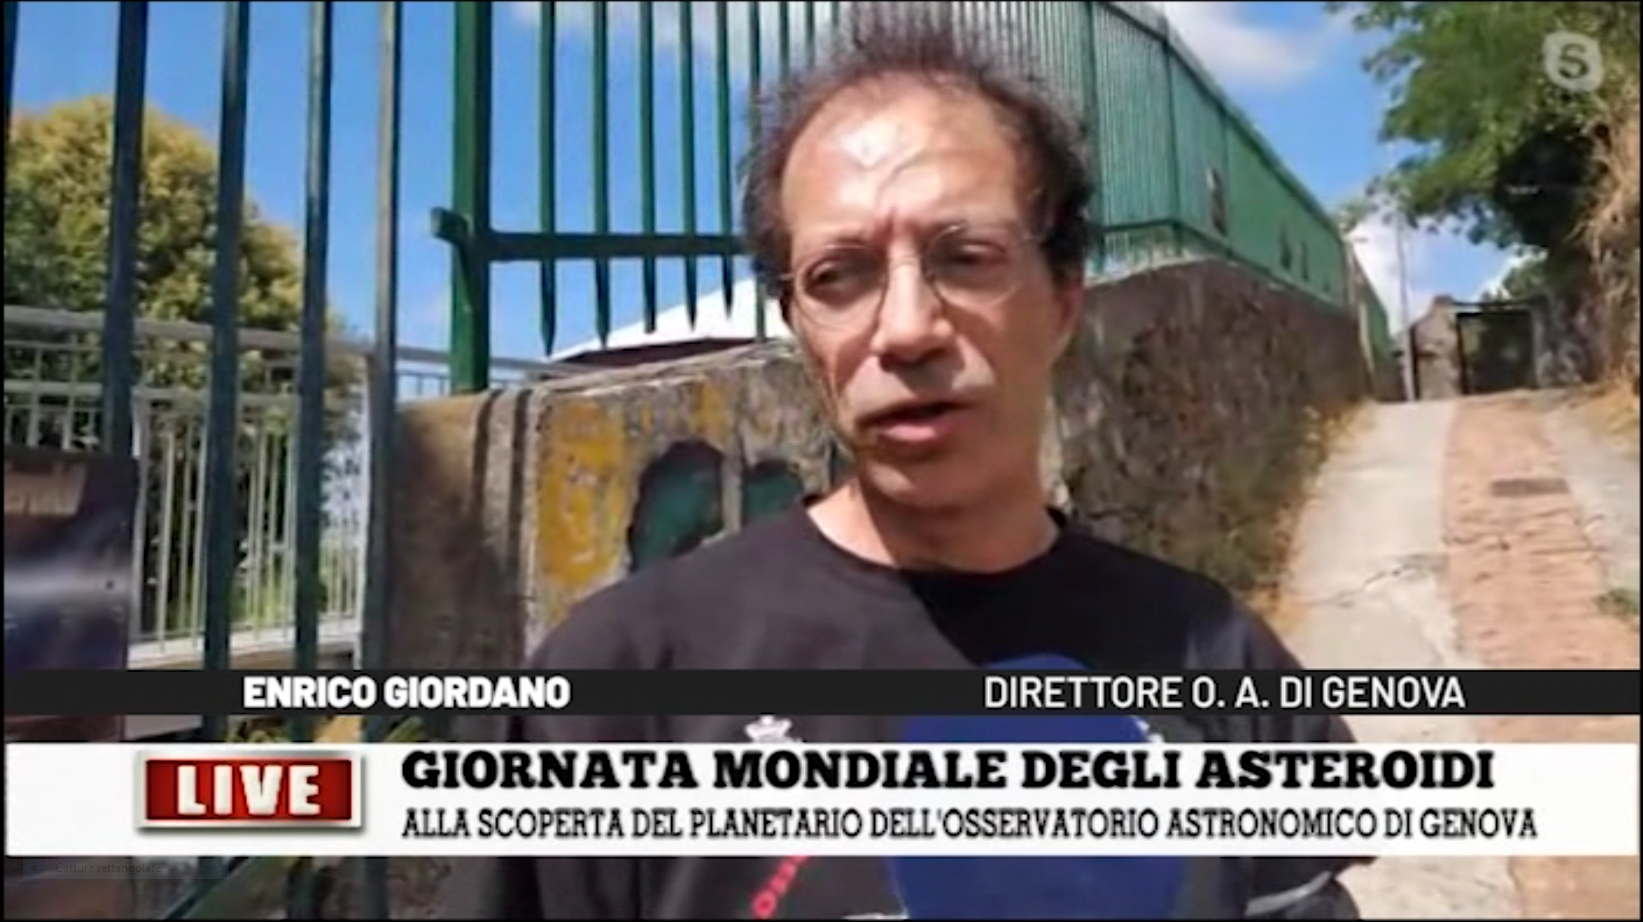 Giornata Mondiale degli Asteroidi, visita all'Osservatorio Astronomico di Genova